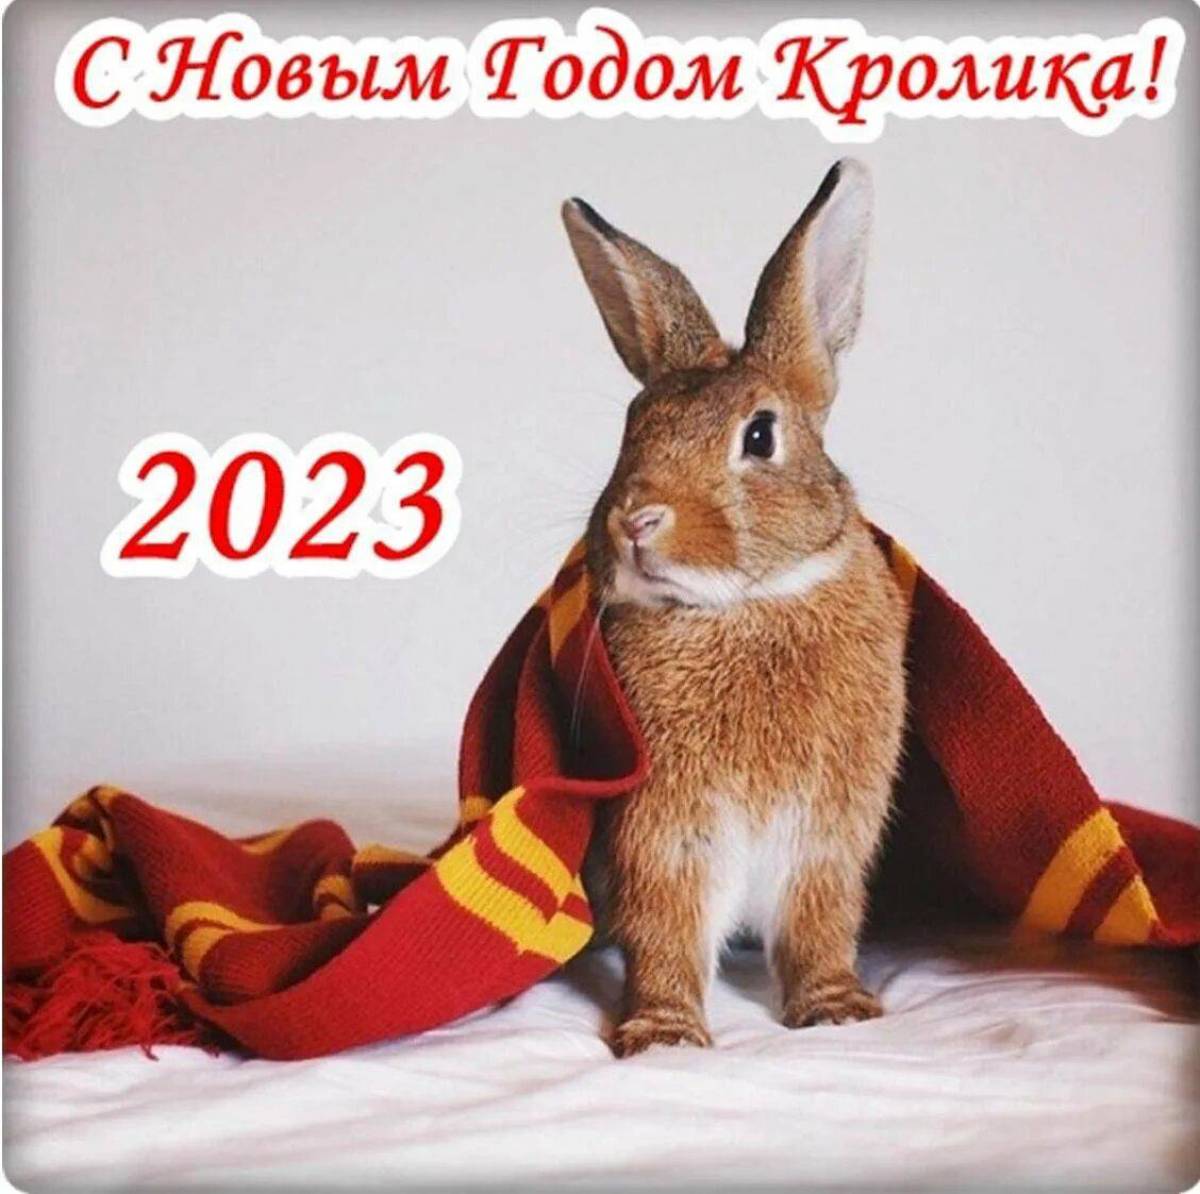 Поздравление новым 2023. С новым годом кролика 2023. С наступающим новым годом кролика 2023. Поздравление с новым годом кролика 2023 года. Поздравление с новым годом кролика.